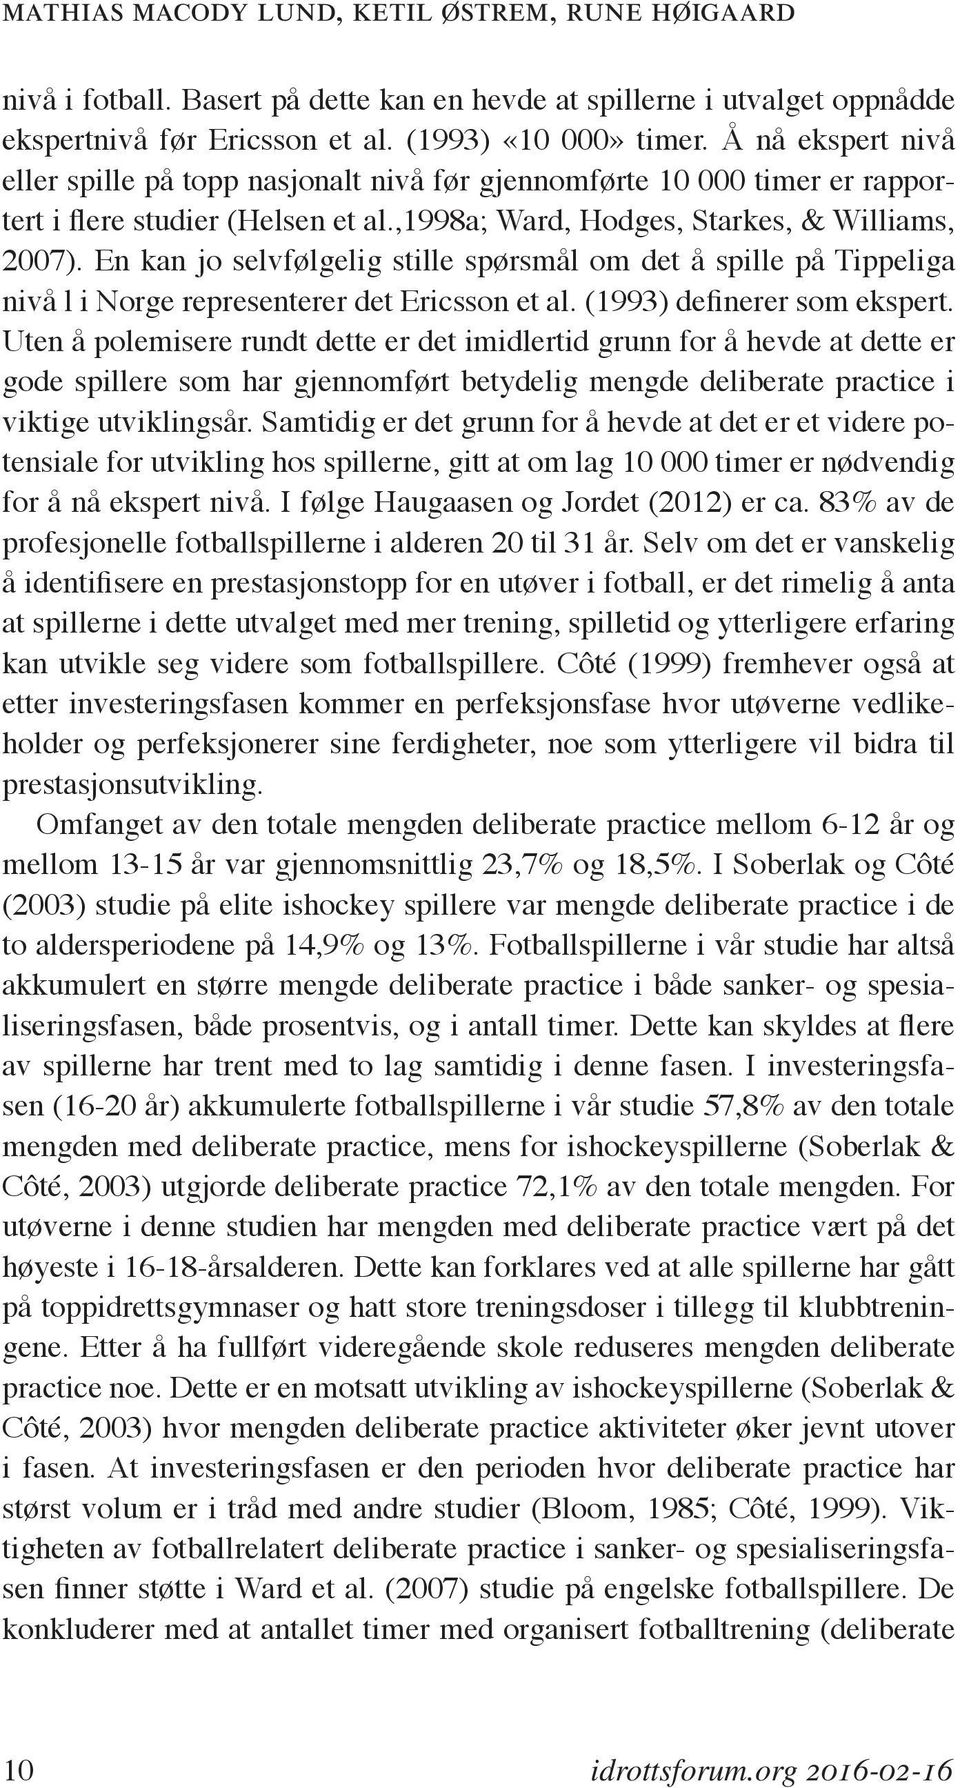 En kan jo selvfølgelig stille spørsmål om det å spille på Tippeliga nivå l i Norge representerer det Ericsson et al. (1993) definerer som ekspert.